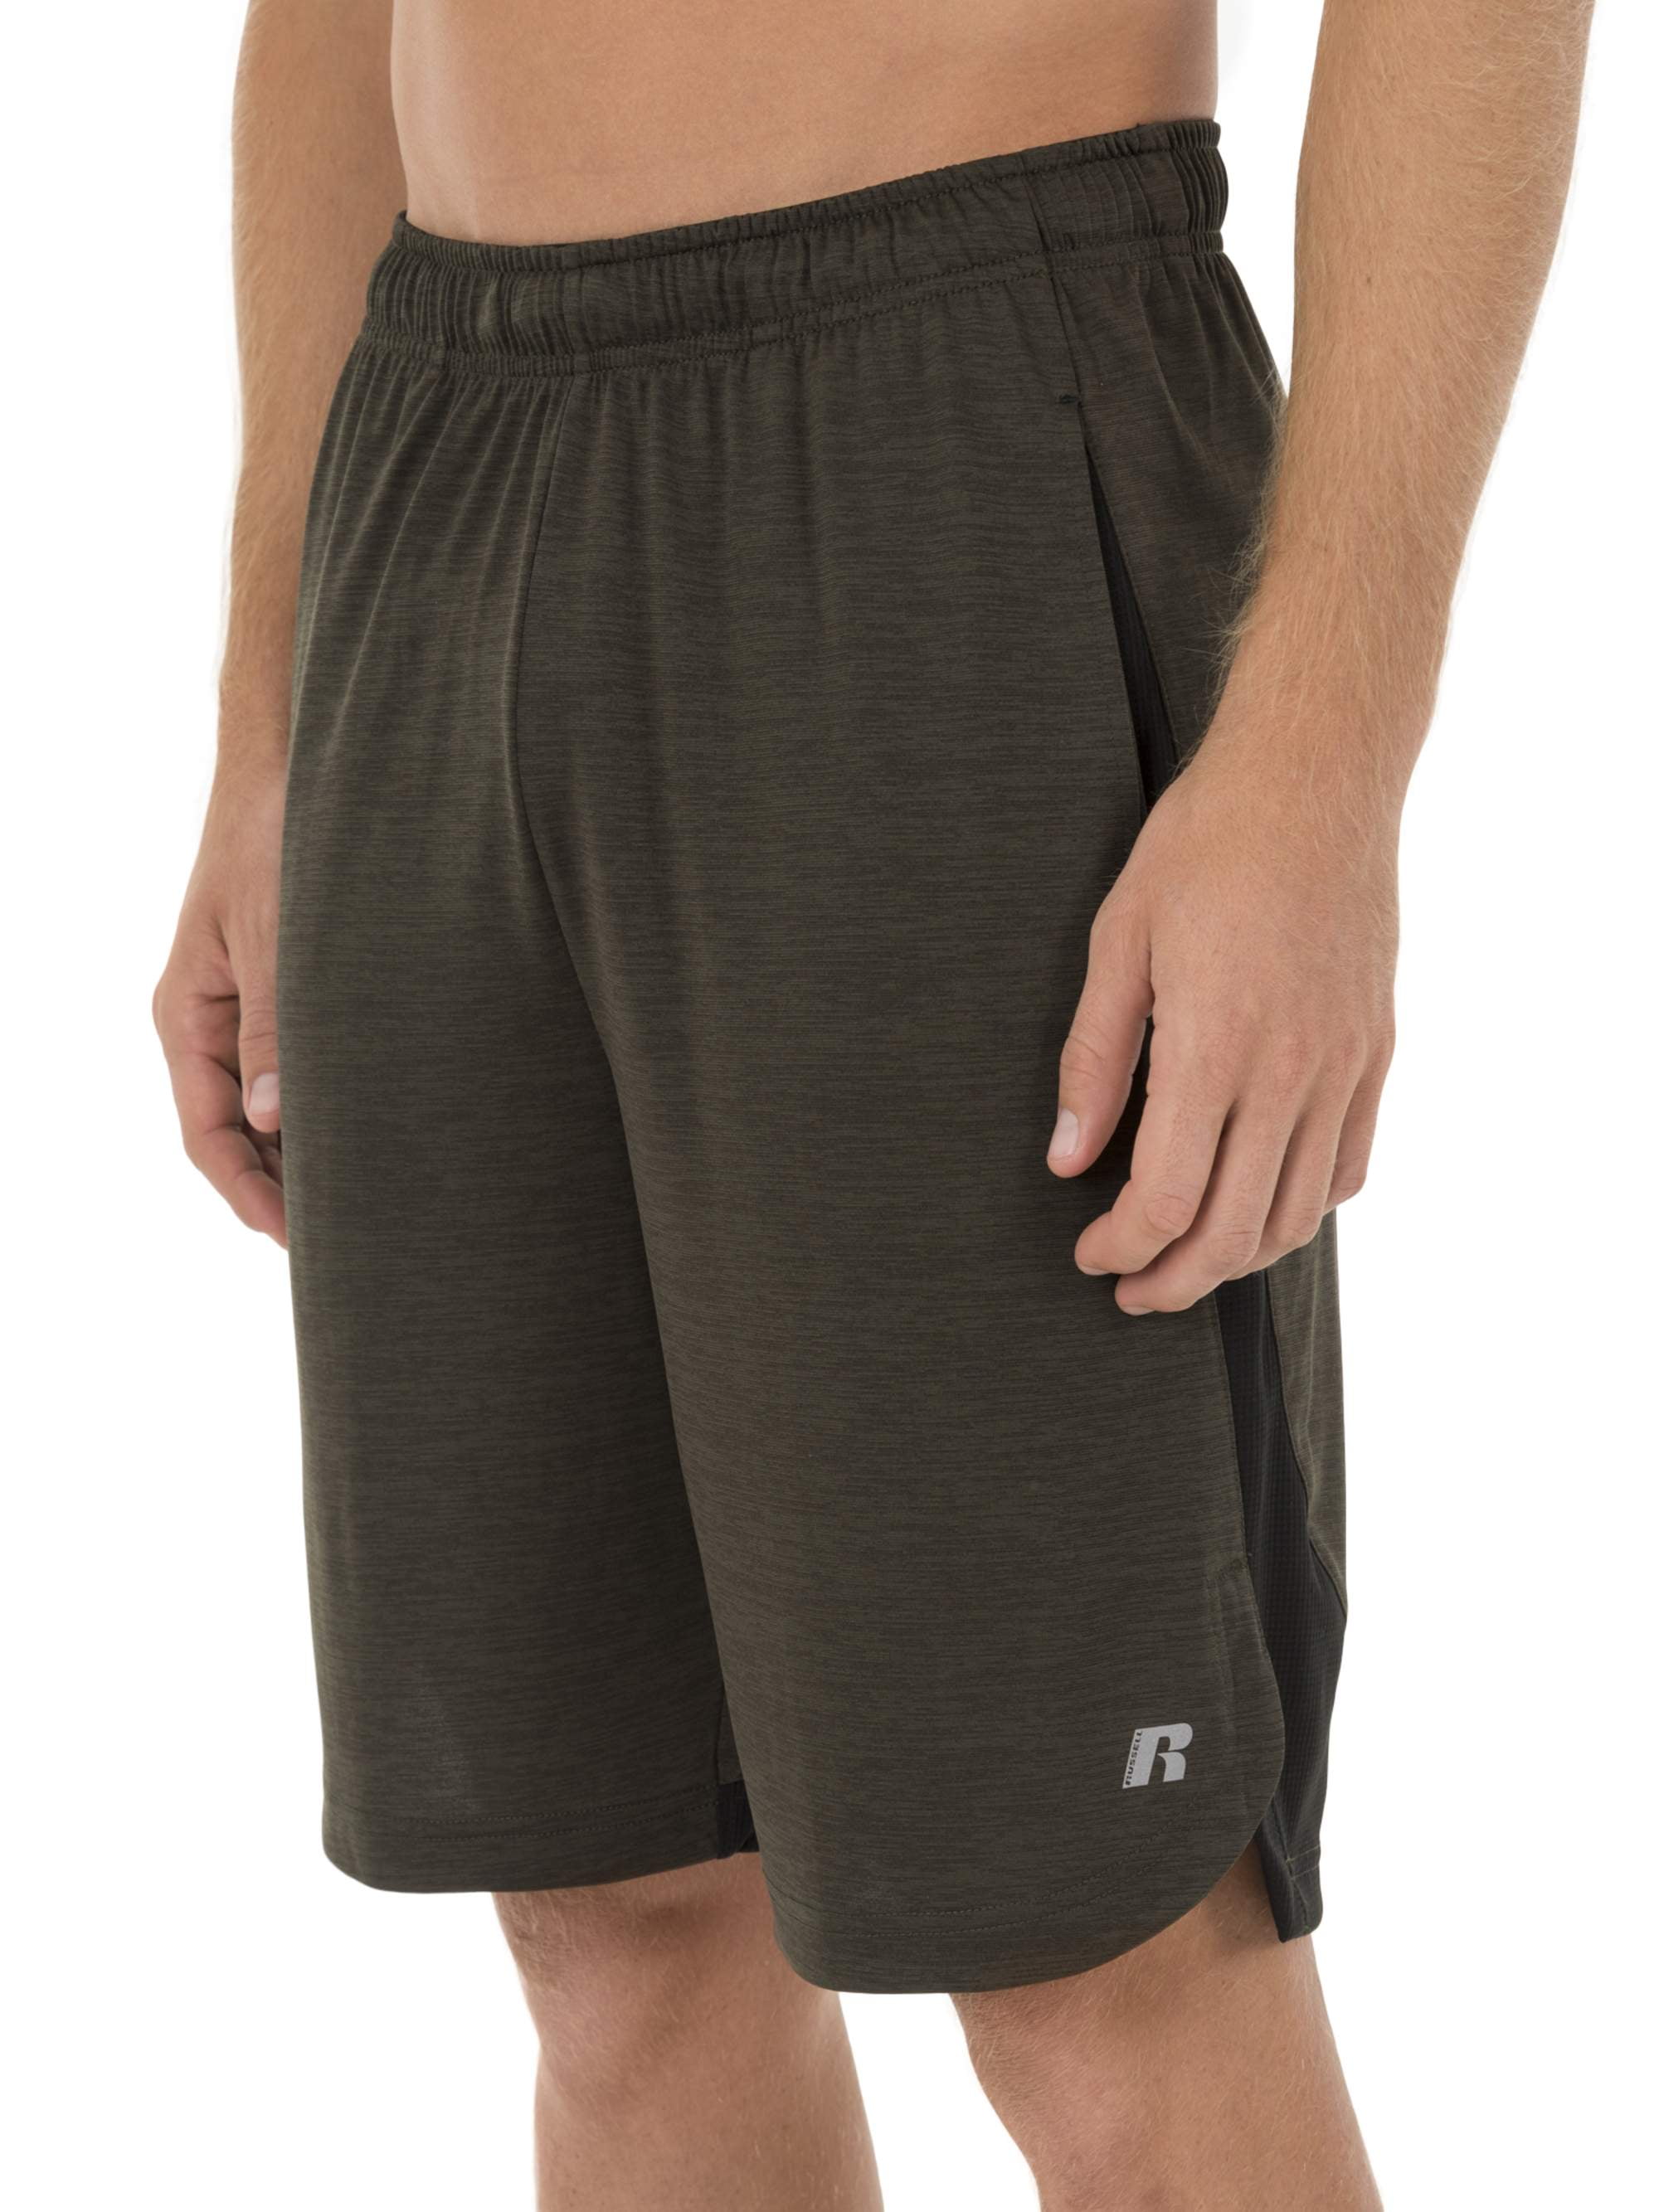 Russell Big Men's Core Performance Active Shorts - Walmart.com